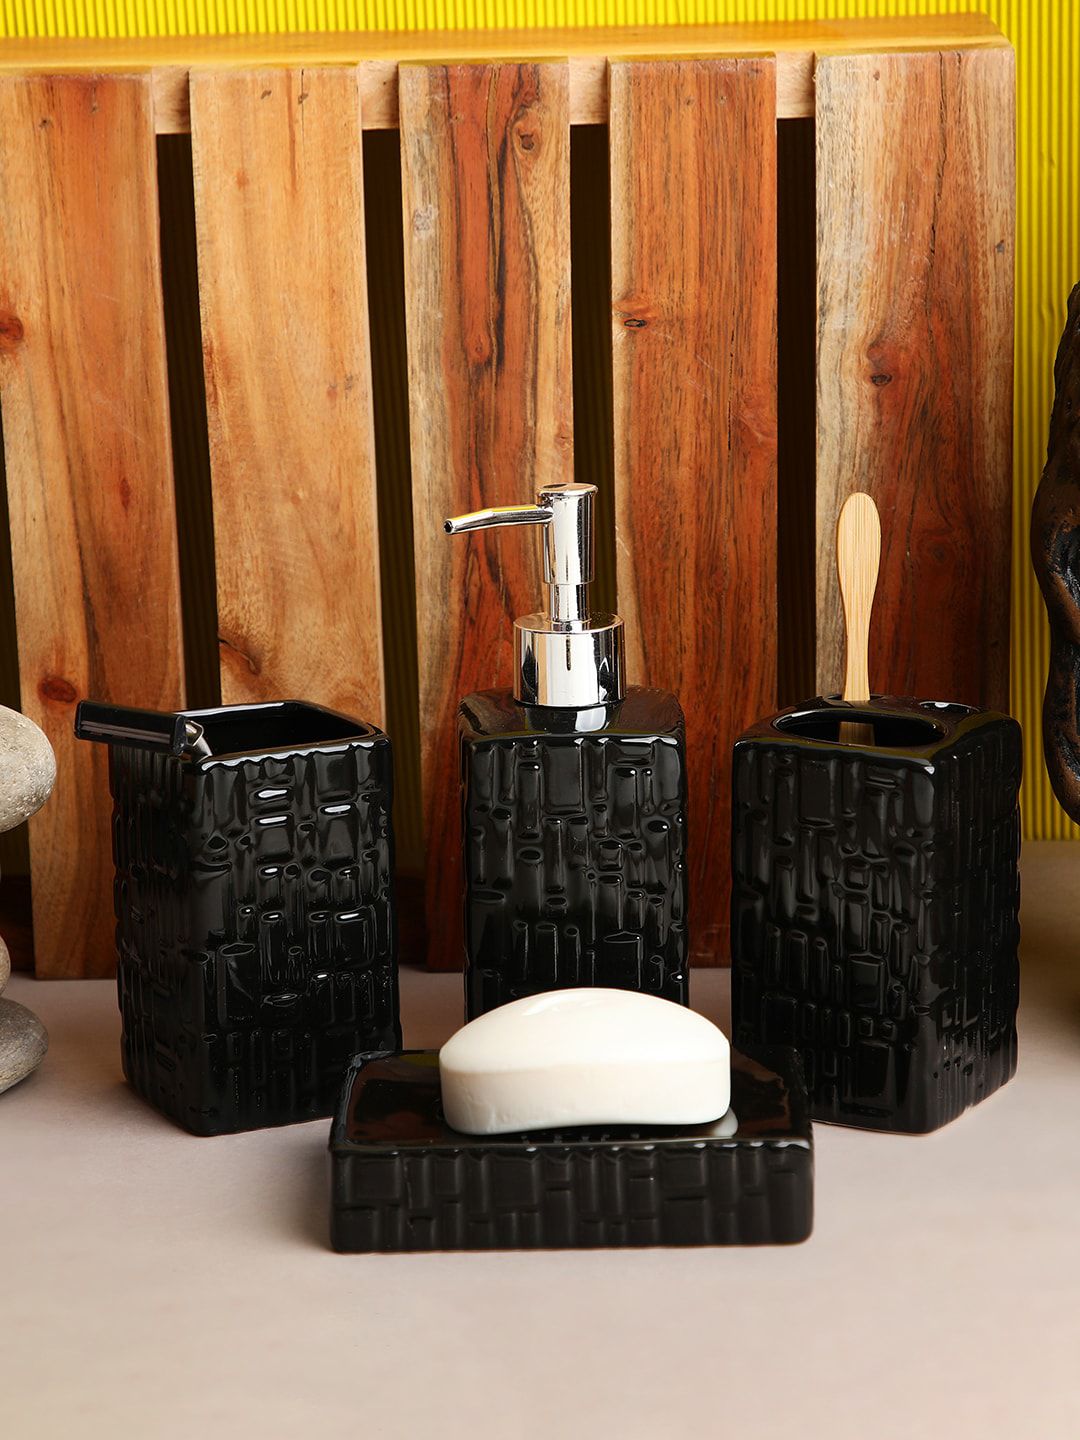 ROMEE 4 Pieces Black Textured Ceramic Bathroom Accessories Set Price in India